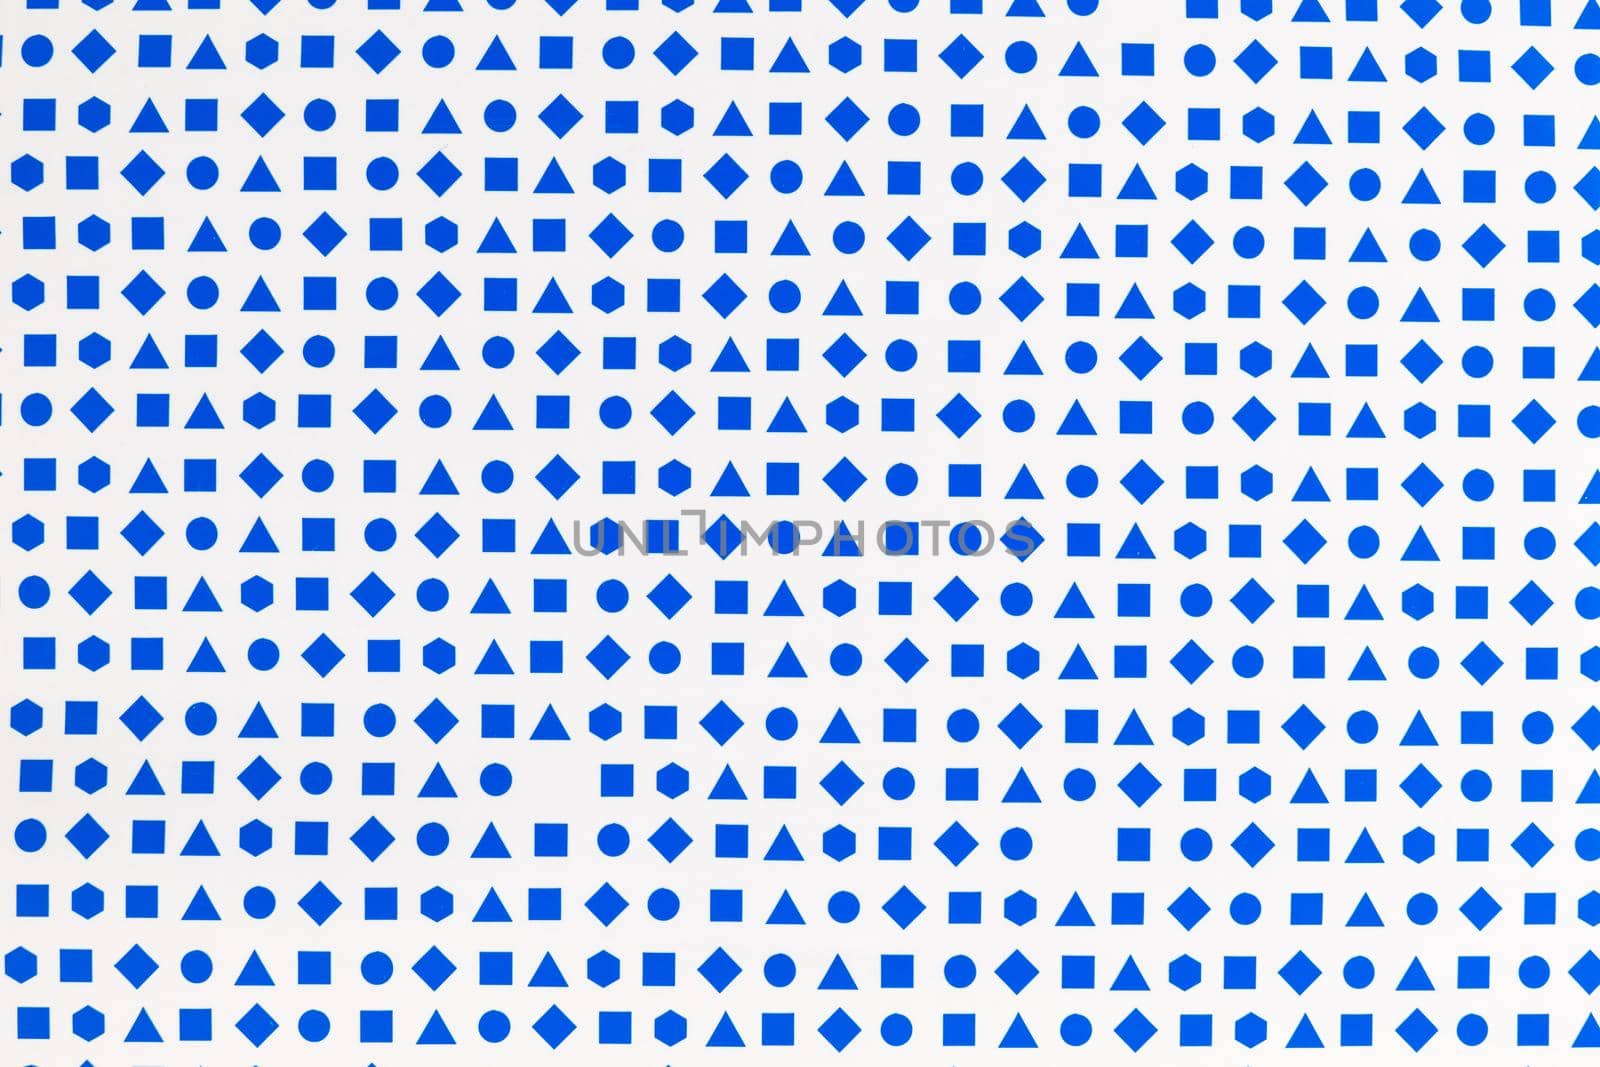 blue geometric shapes on white background